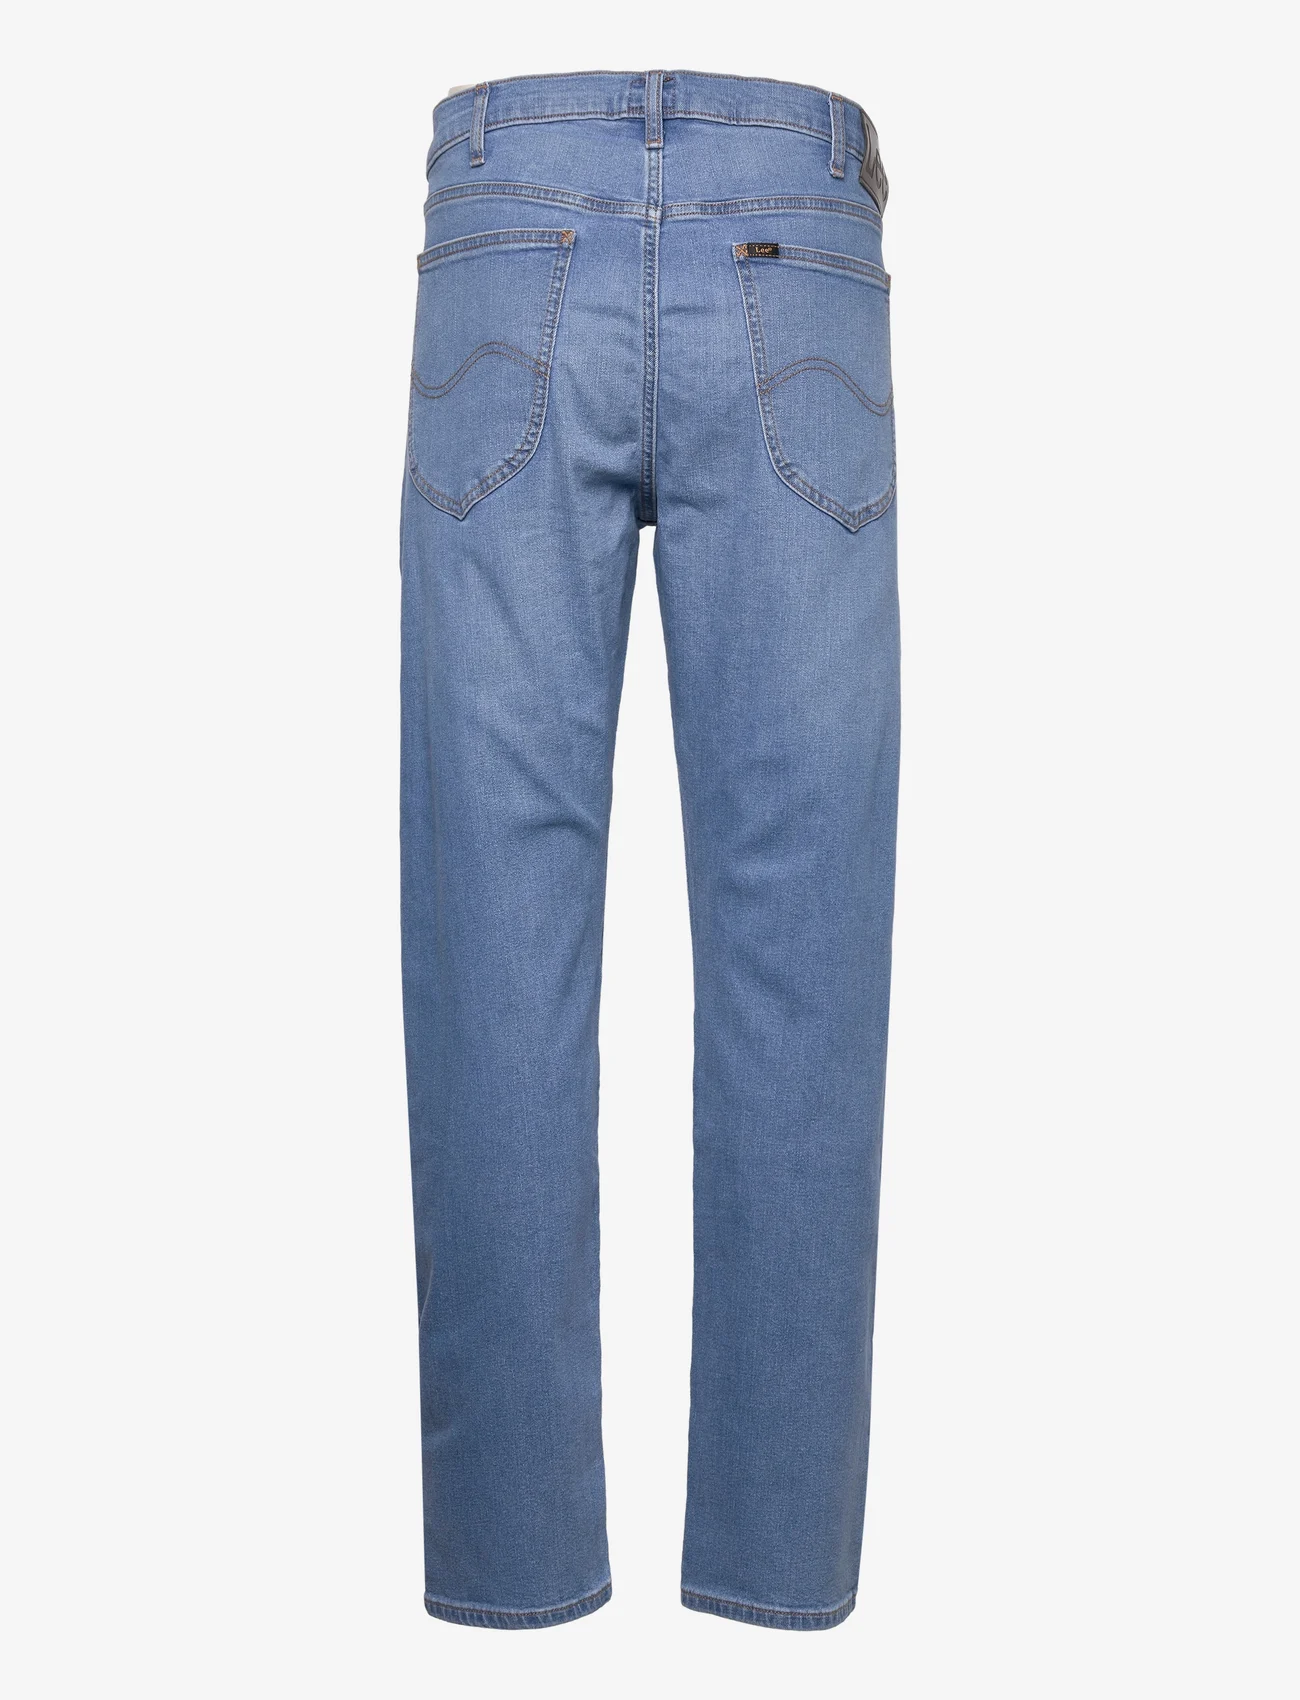 Lee Jeans - DAREN ZIP FLY - regular jeans - light worn - 1